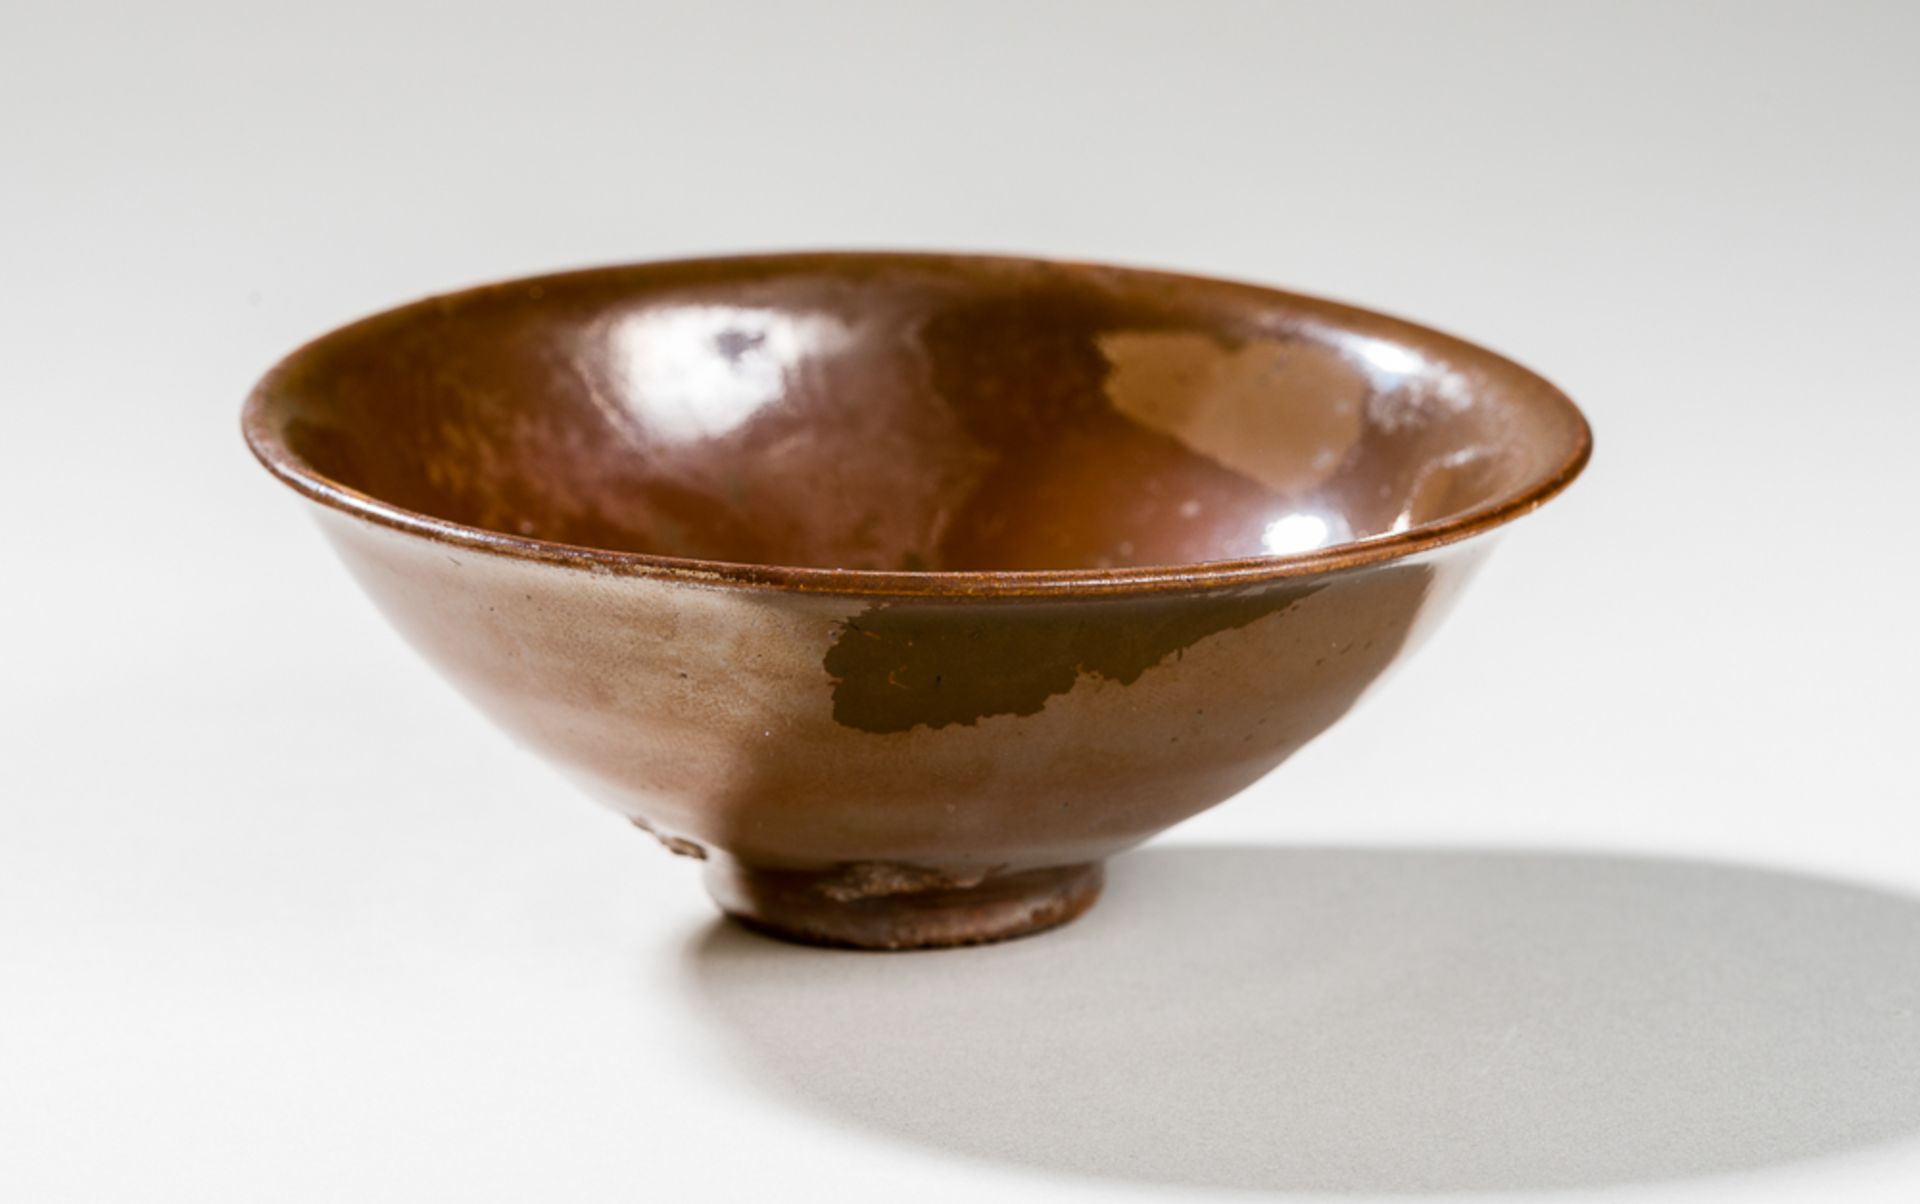 SCHALE MIT ROSTBRAUNER GLASURGlasierte Keramik. China, Nördl. Song bis Jin, 11. bis 12. Jh.Eine